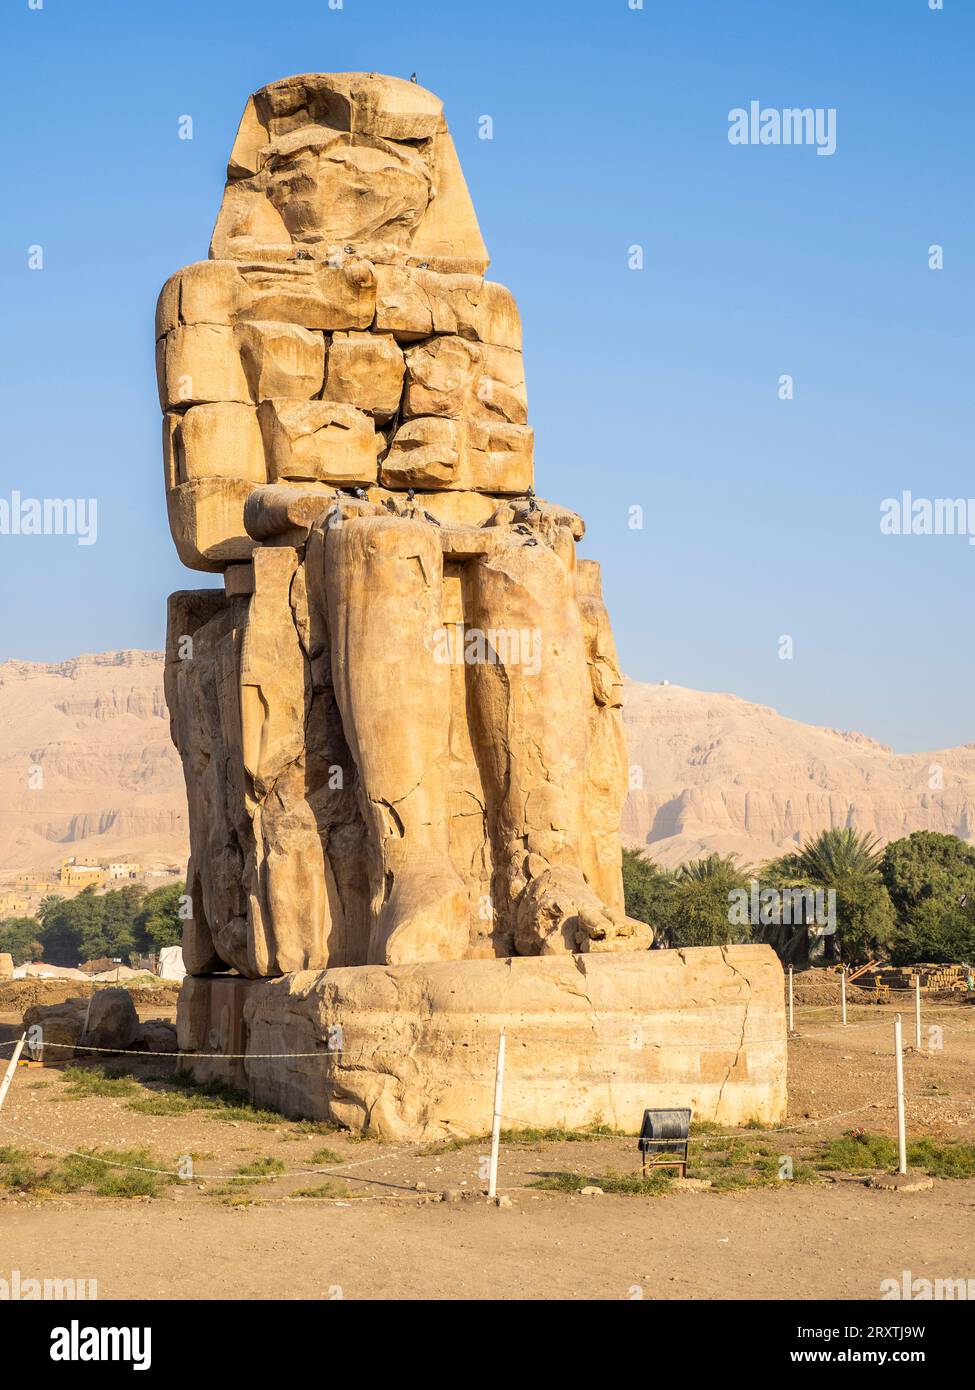 Estatua sentada, uno de los Colosos de Memnón, cerca del Valle de los Reyes, donde durante un período de 500 años se excavaron tumbas de roca para los faraones Foto de stock